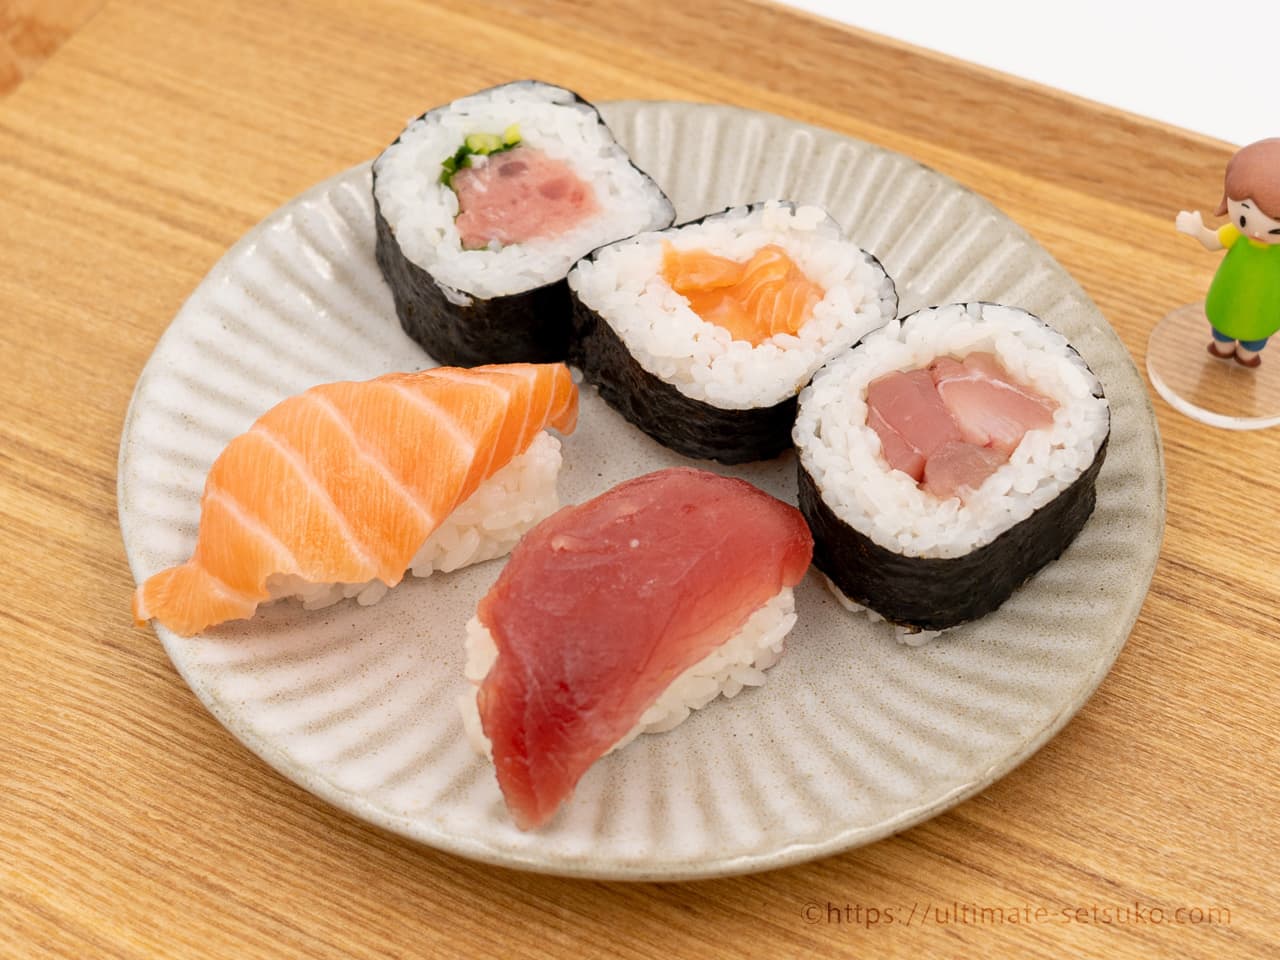 コストコの本まぐろとサーモン寿司は絶対食べるべきおすすめ品 ちょうど良いサイズ感